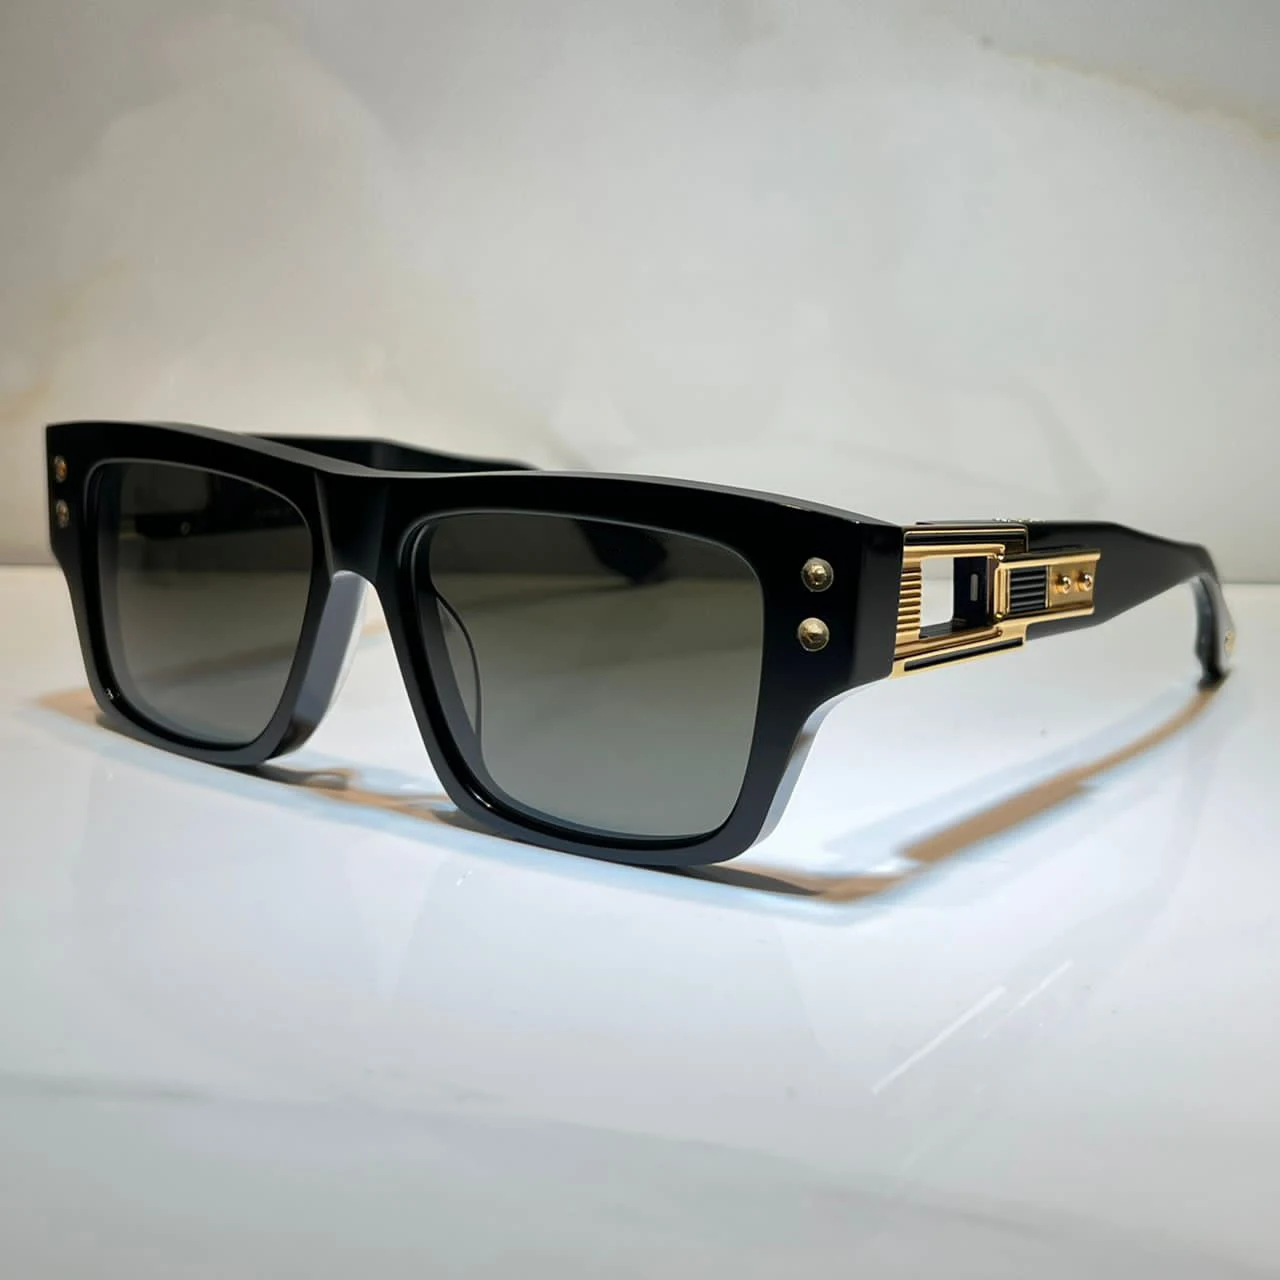 

Sunglasses For Women and Men Summer SEVEN 407 Brand Style Anti-Ultraviolet Retro Plate Full Frame Glasses Random Box